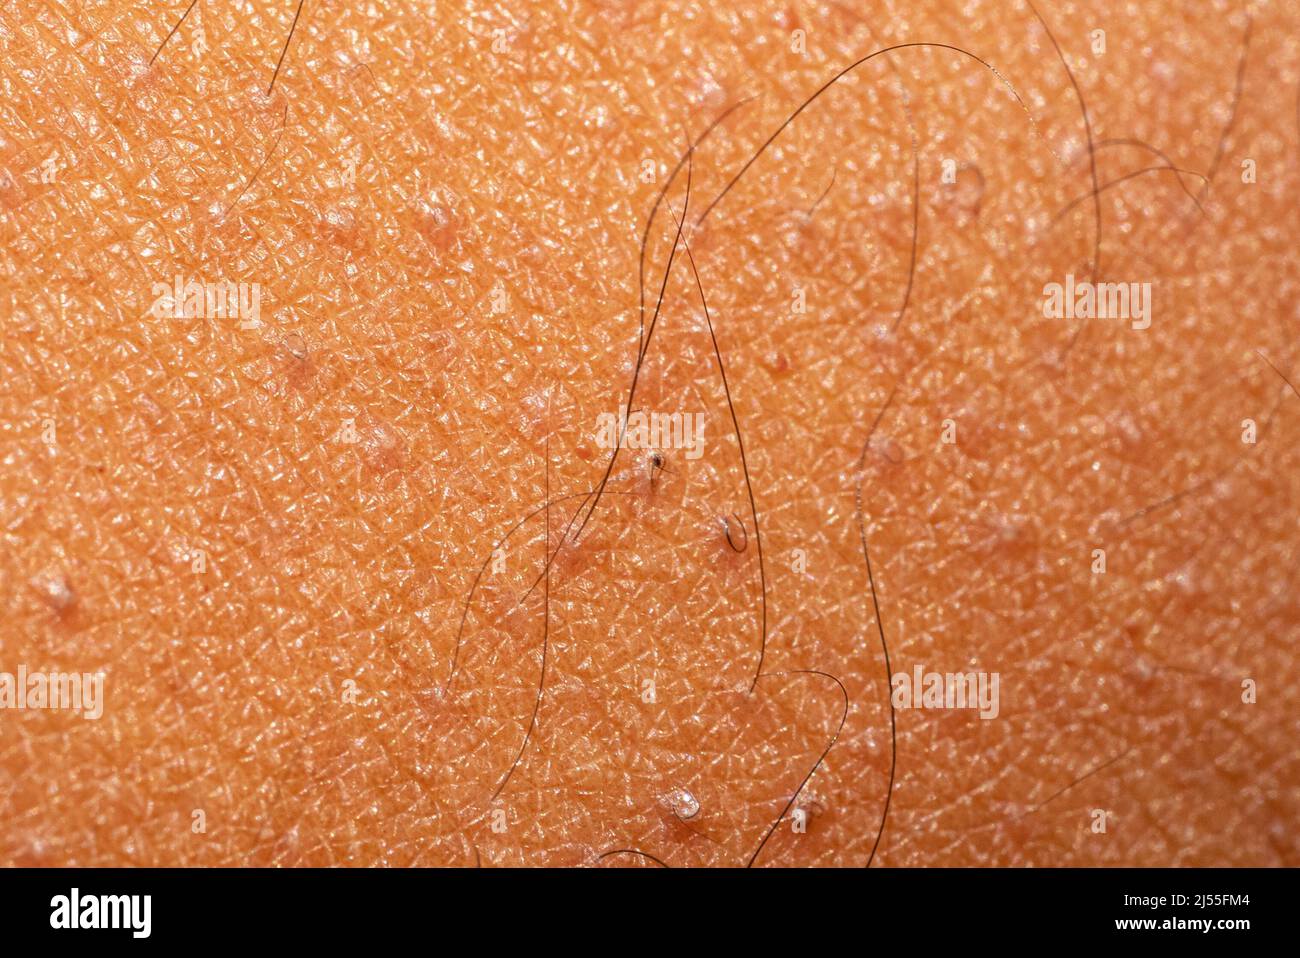 Photo macro de peau brune avec kératose pilaris et poils incarnés. Les détails et la texture de la peau sont clairement visibles. Banque D'Images